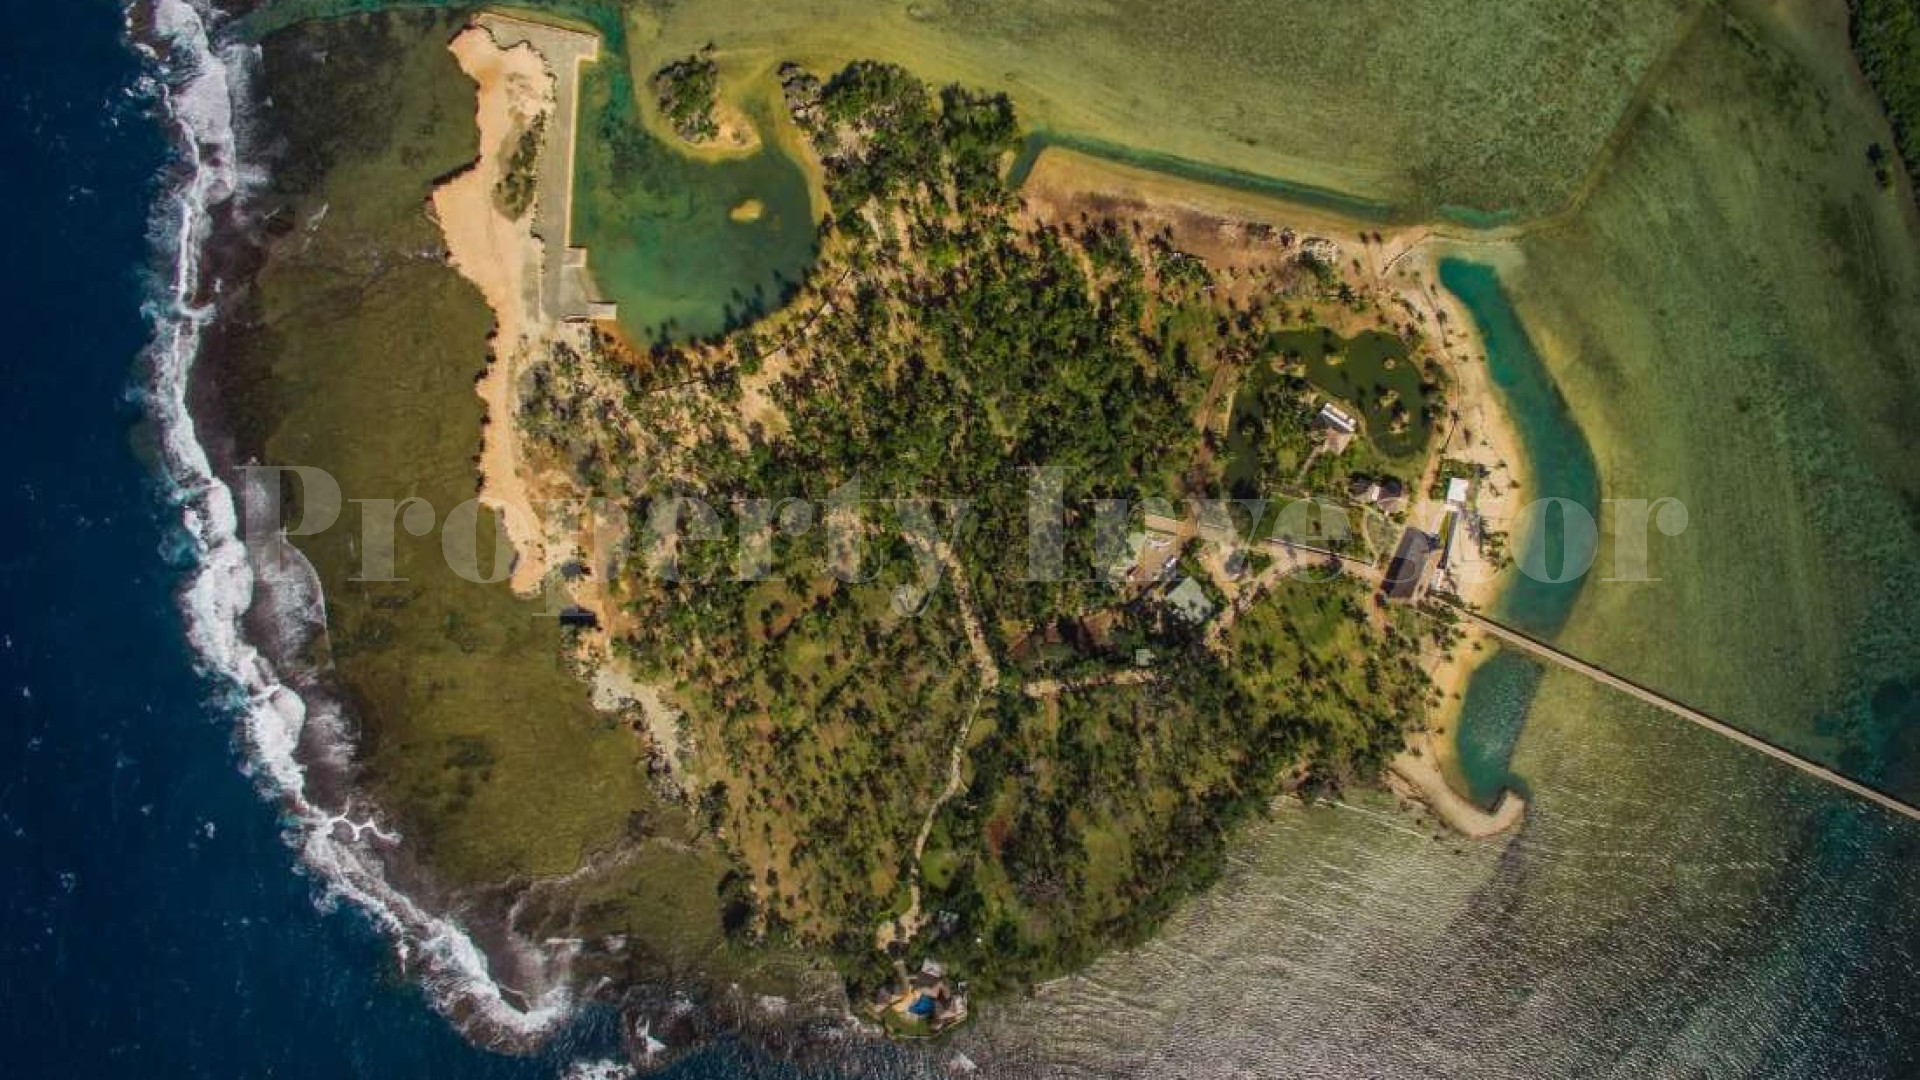 4,201 m² Private Island Freehold Lot for Sale in Vanua Levu, Fiji (Lot 9)